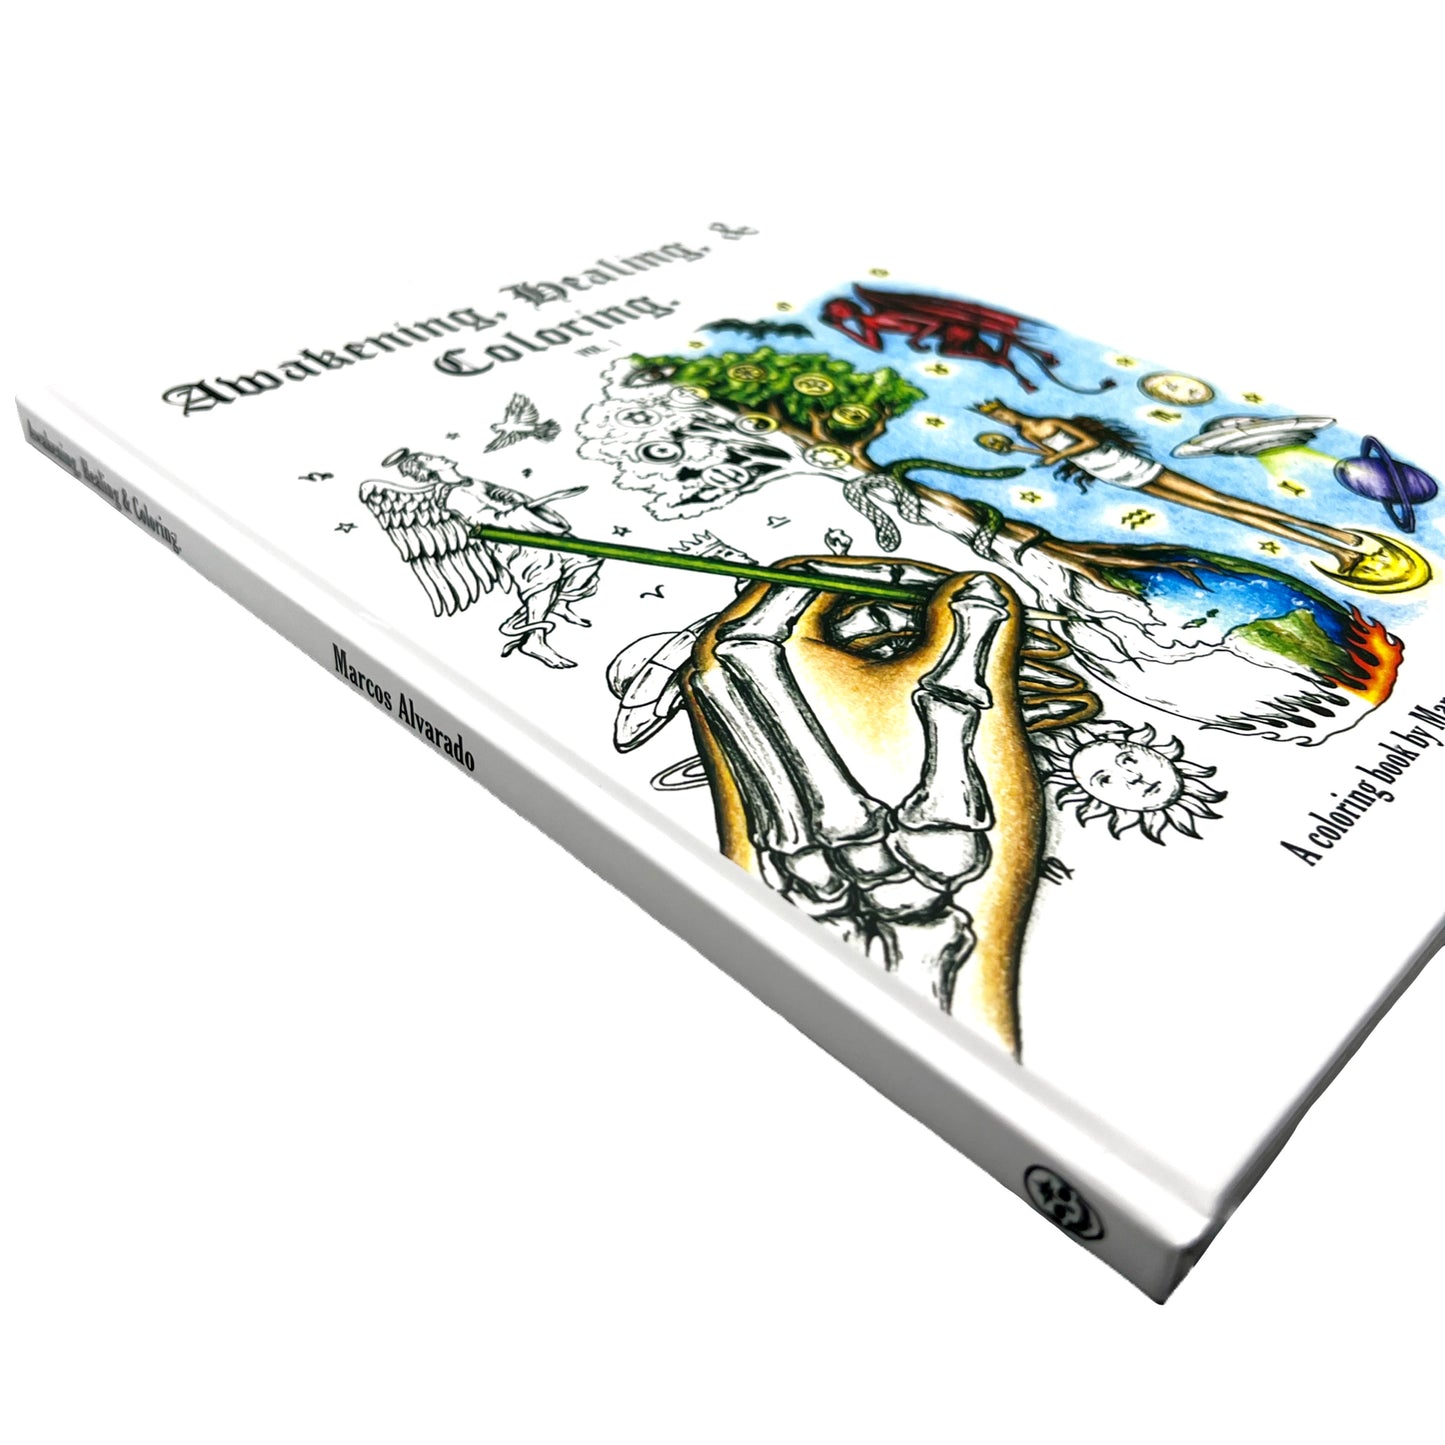 “Awakening, Healing & Coloring” Coloring Book